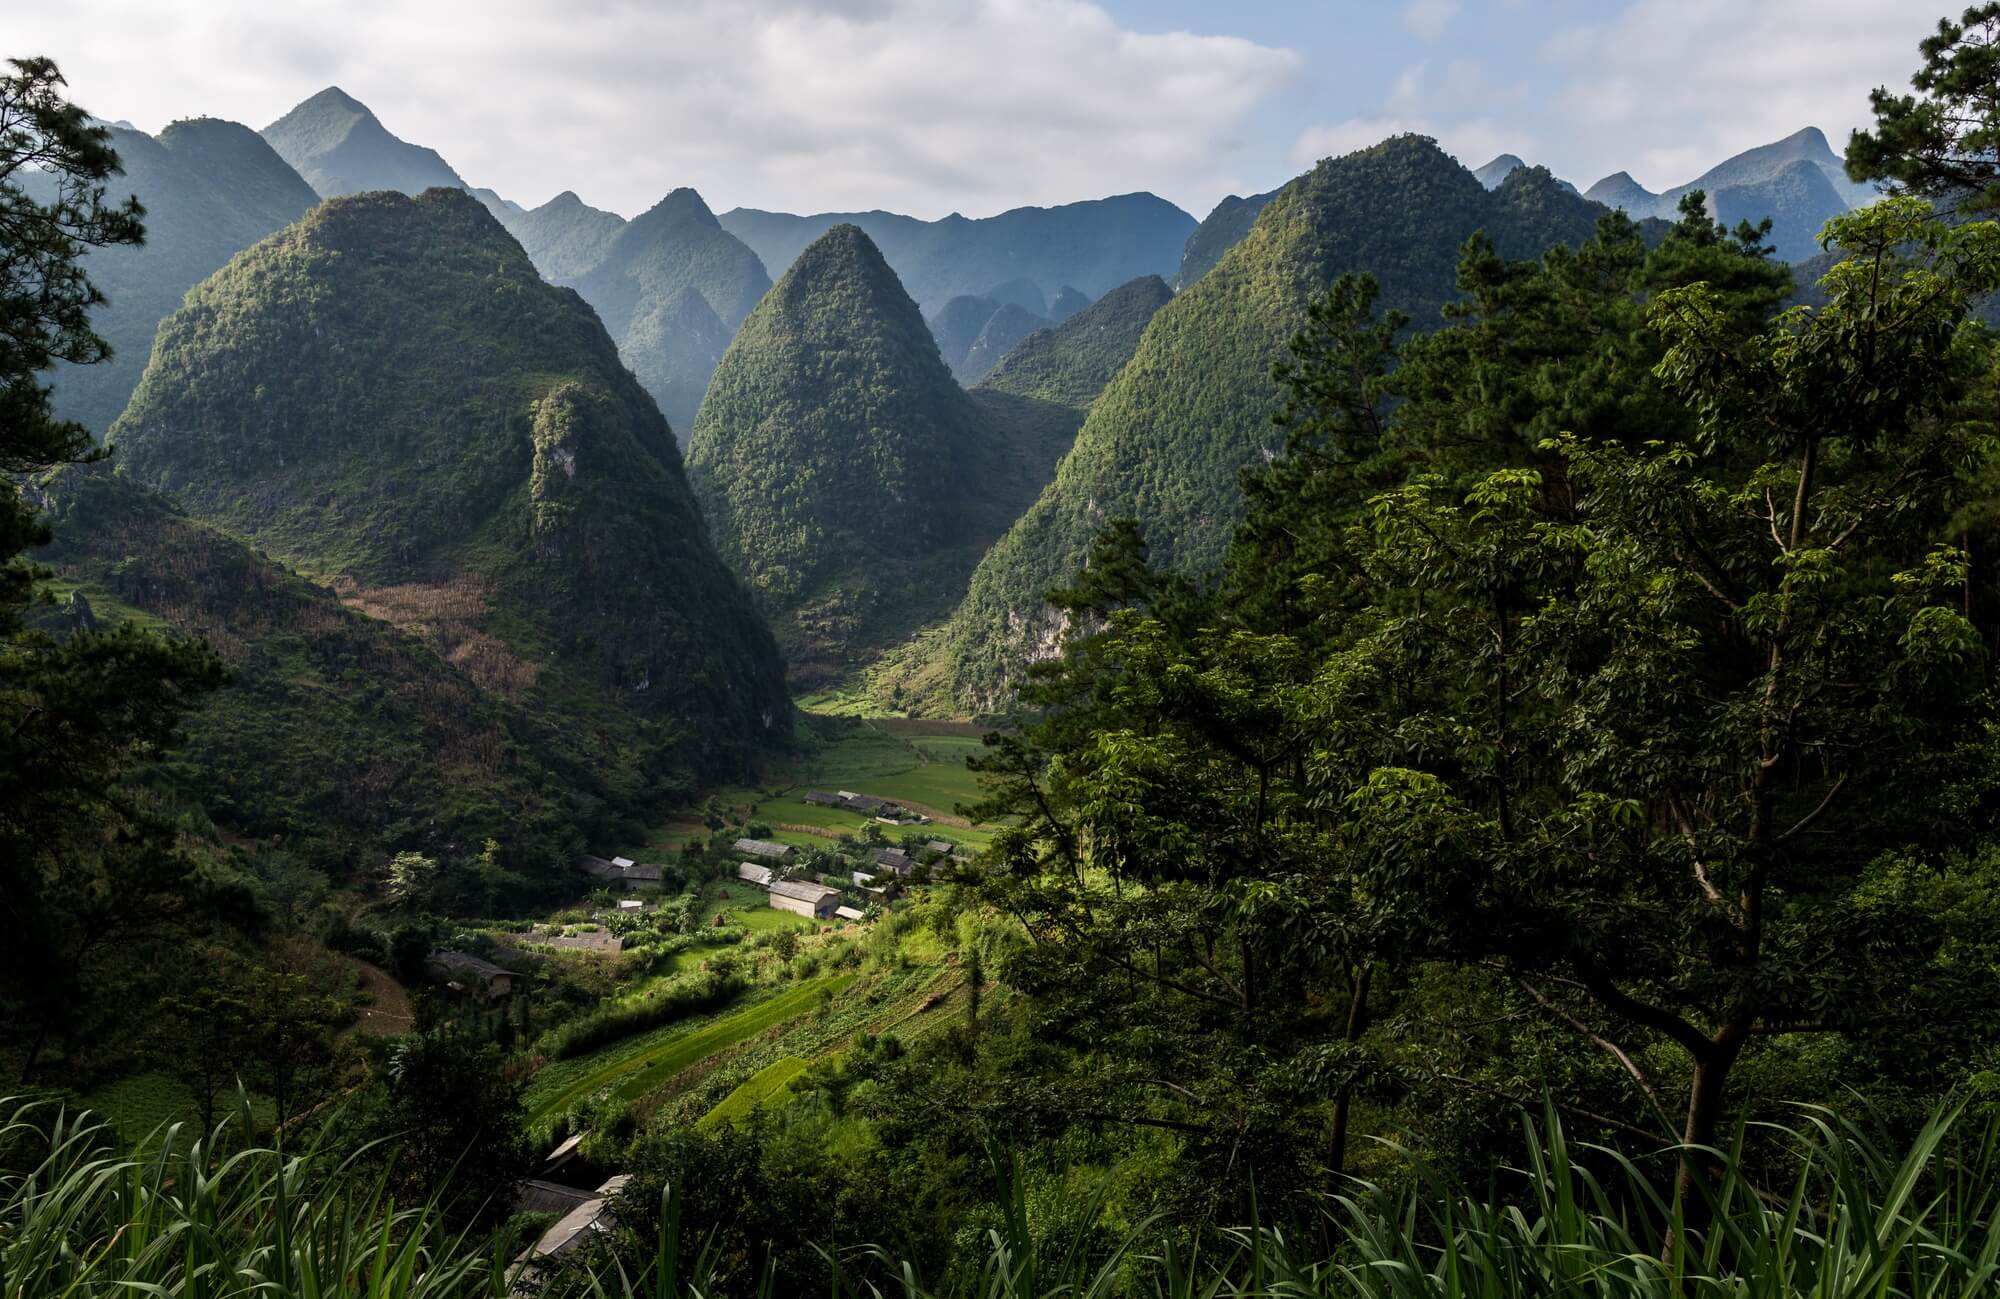 North Vietnam panoramic view of Dong Van village hidden in the valley